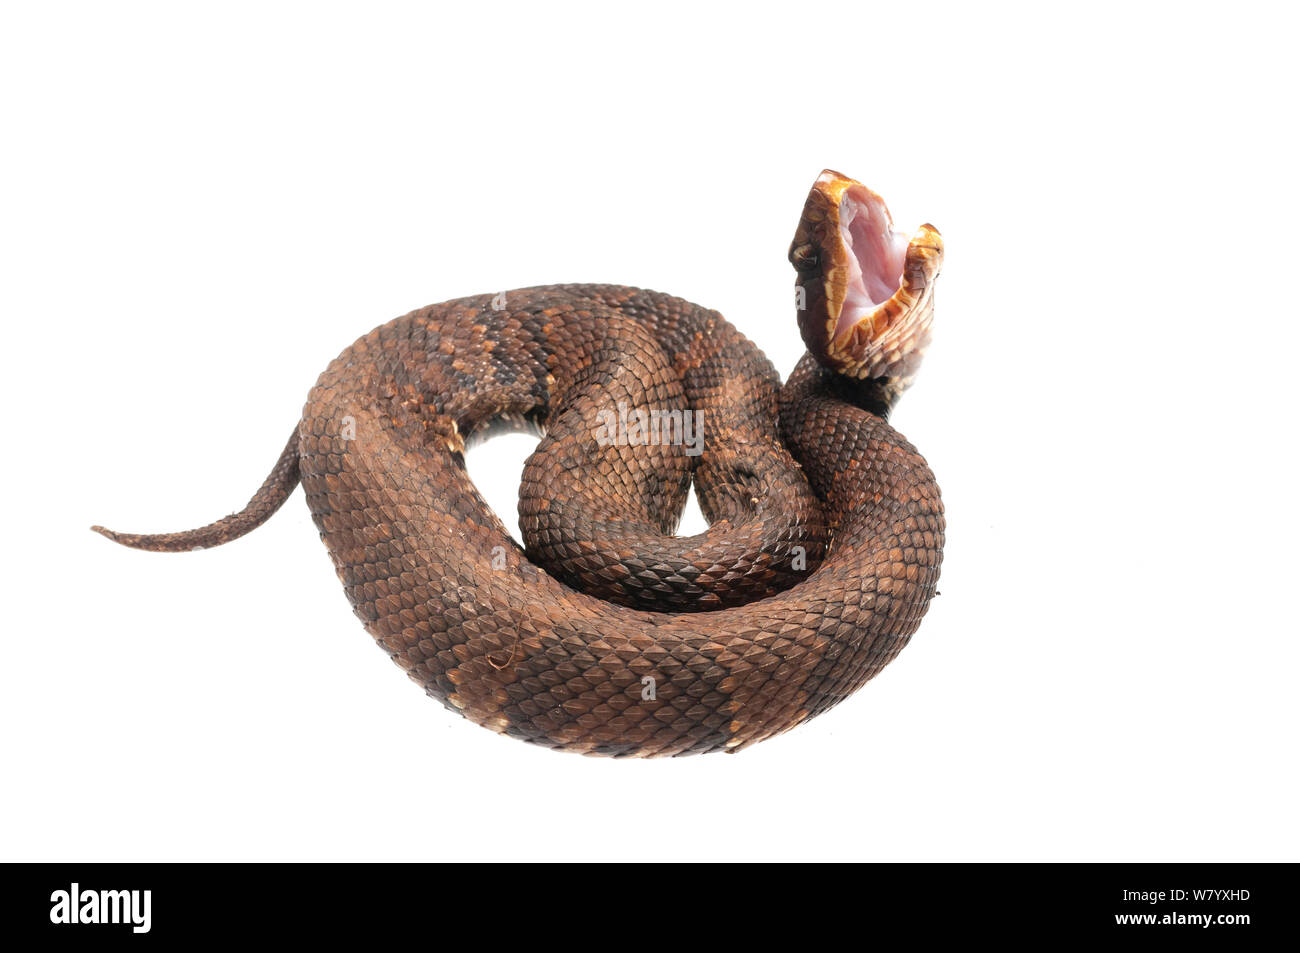 Cottonmouth snake (Agkistrodon piscivorus) eingerollt mit offenem Mund, Wasser Valley, California, USA, April. Meetyourneighbors.net Projekt Stockfoto